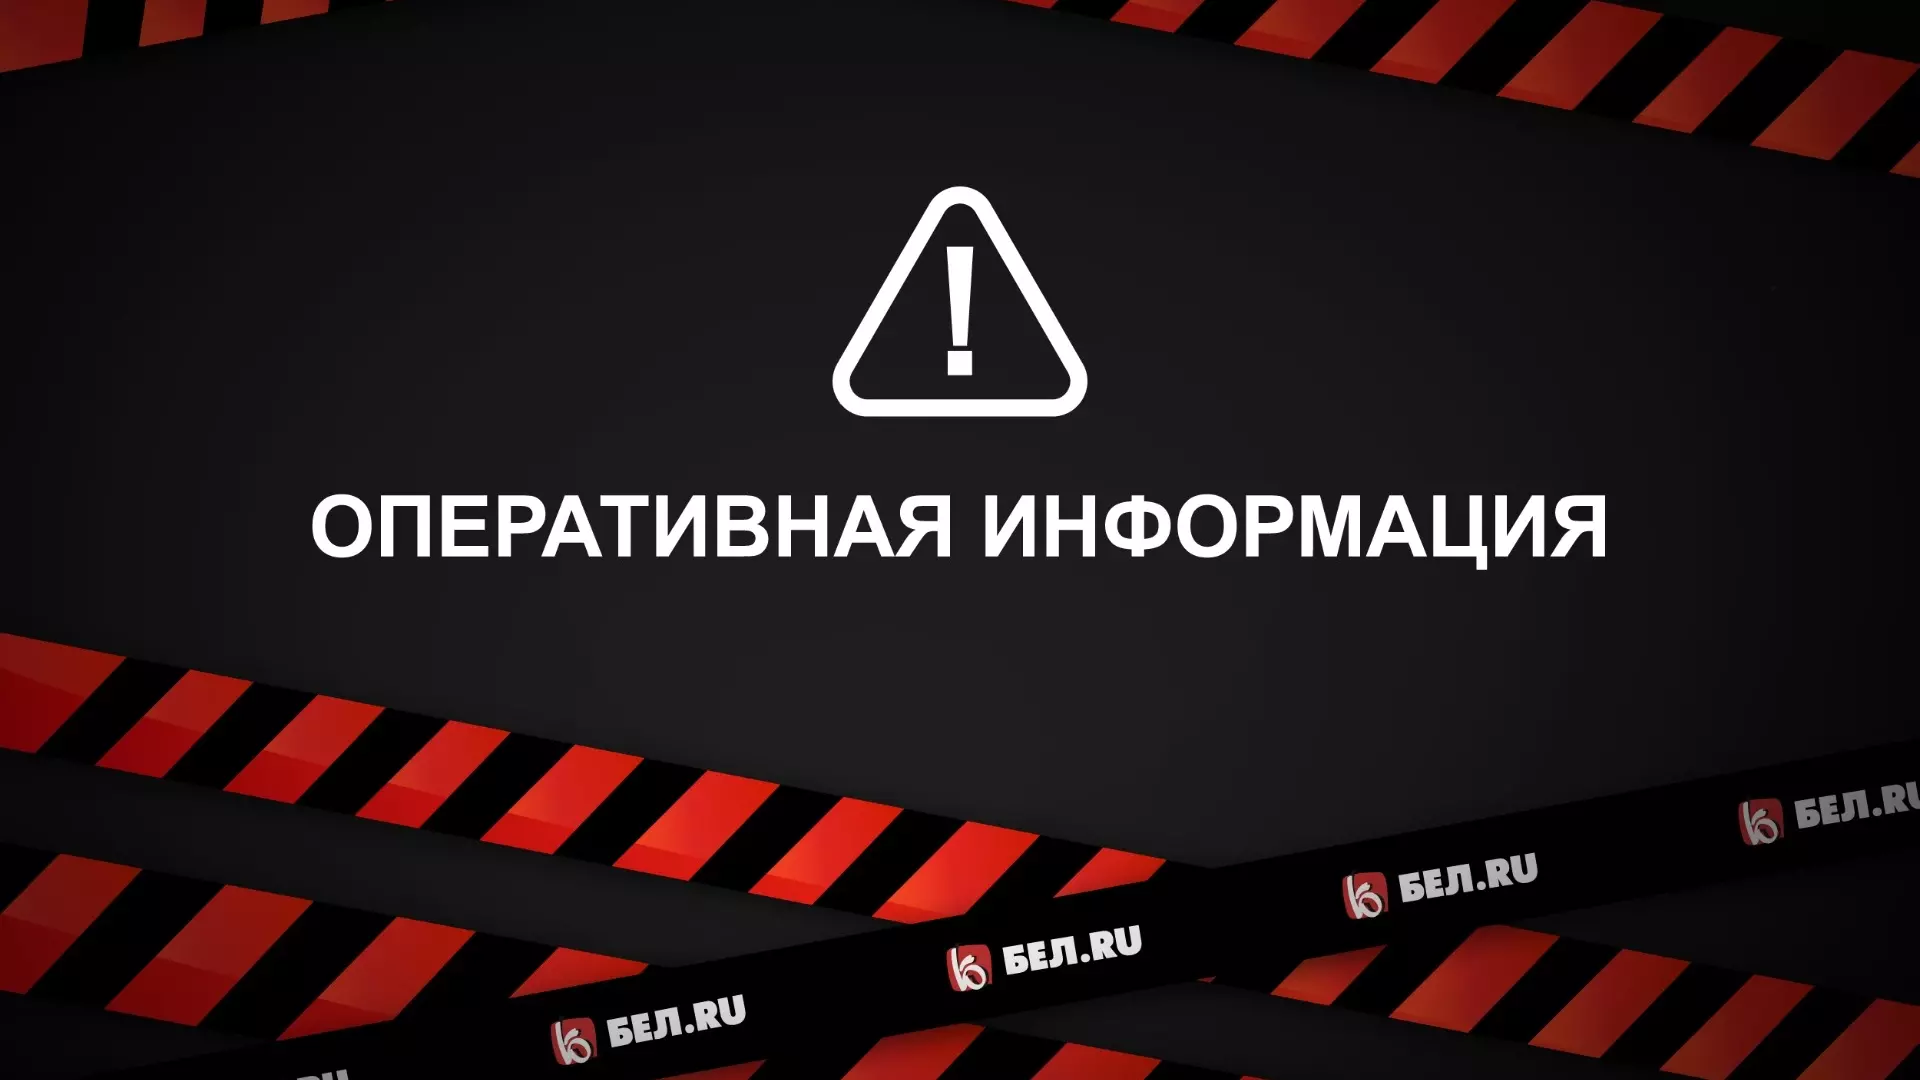 РСЧС сообщило утром о ракетной опасности на границе Белгородской области